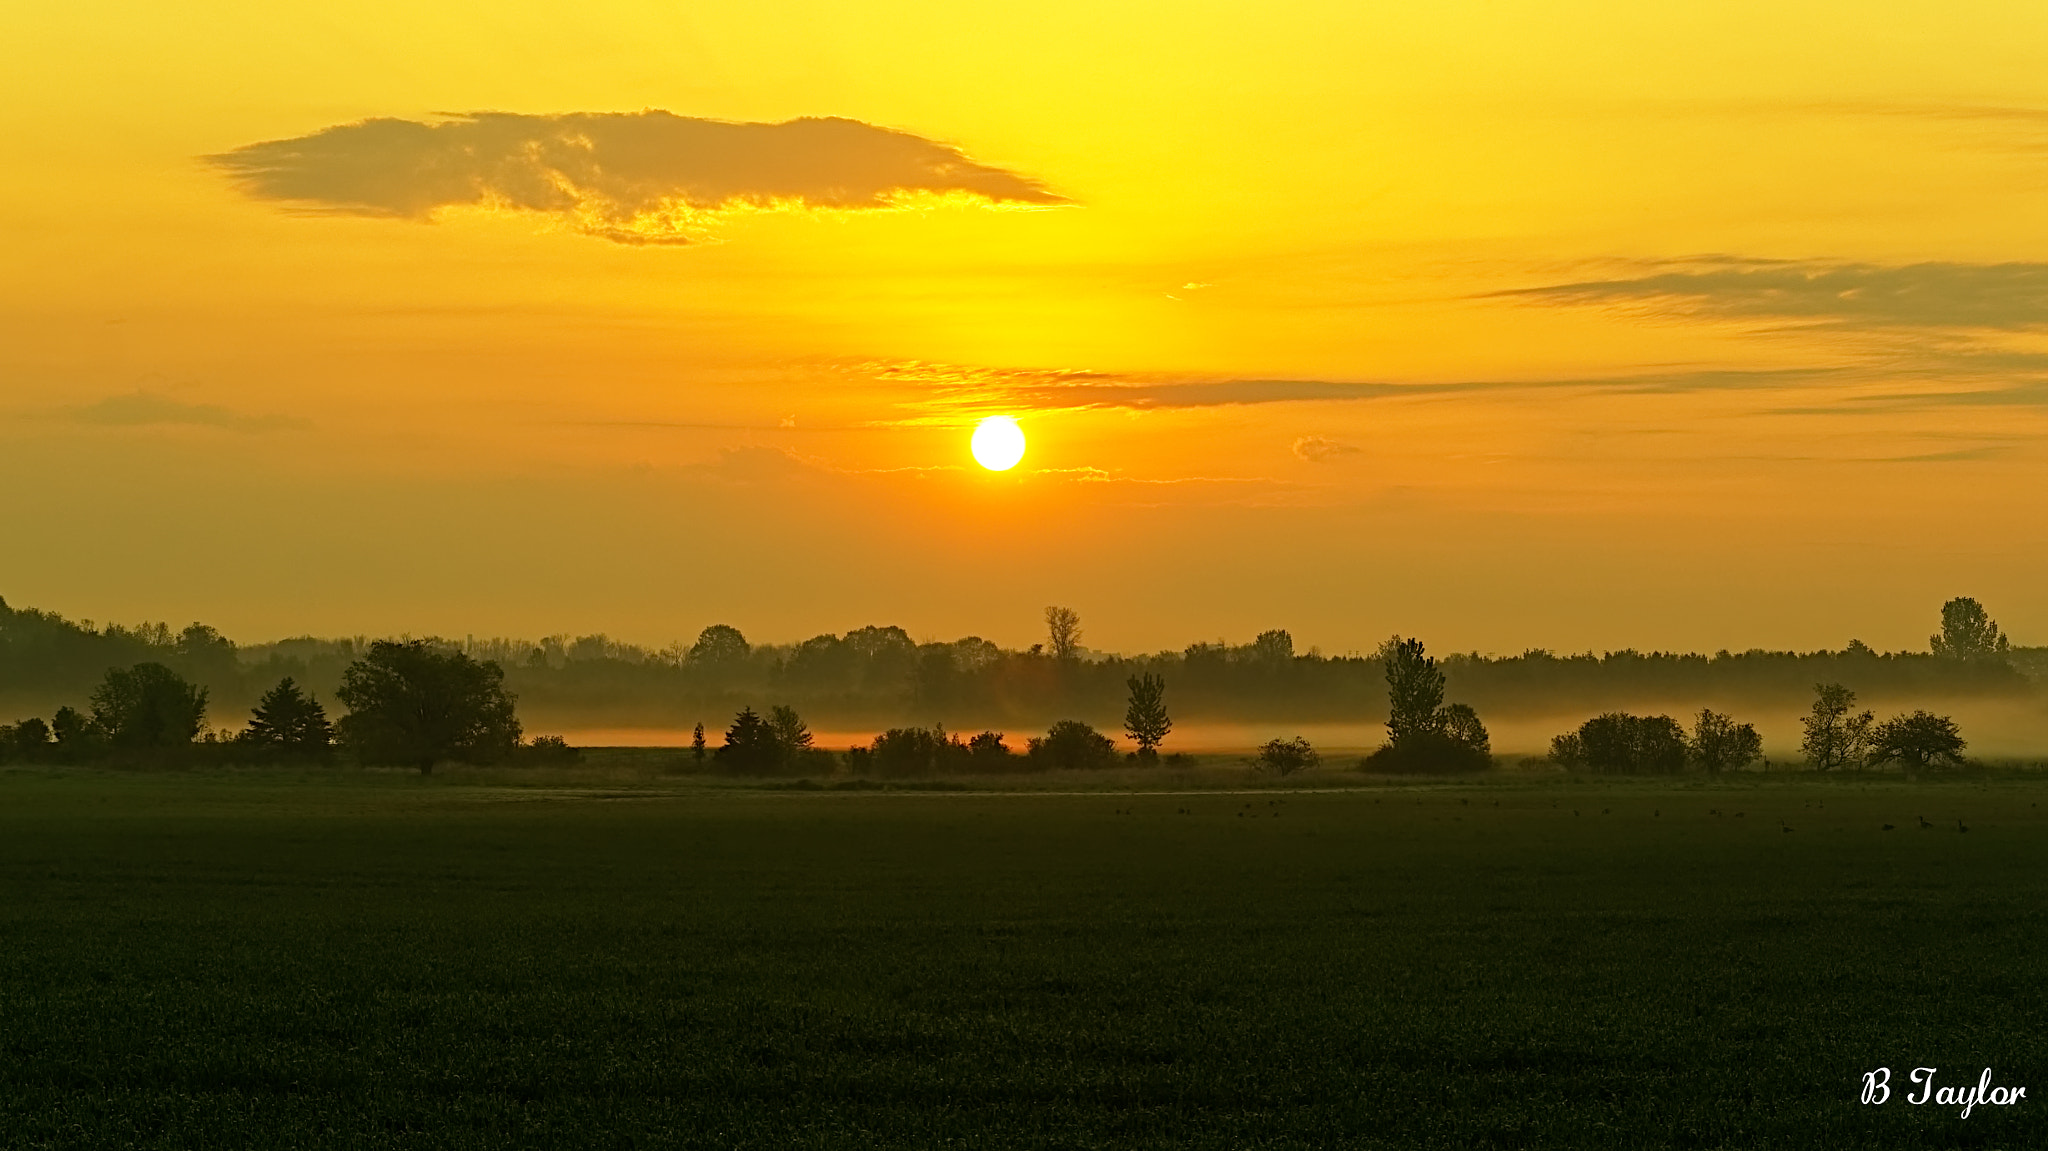 Sony SLT-A57 sample photo. Sunrise across the fields photography